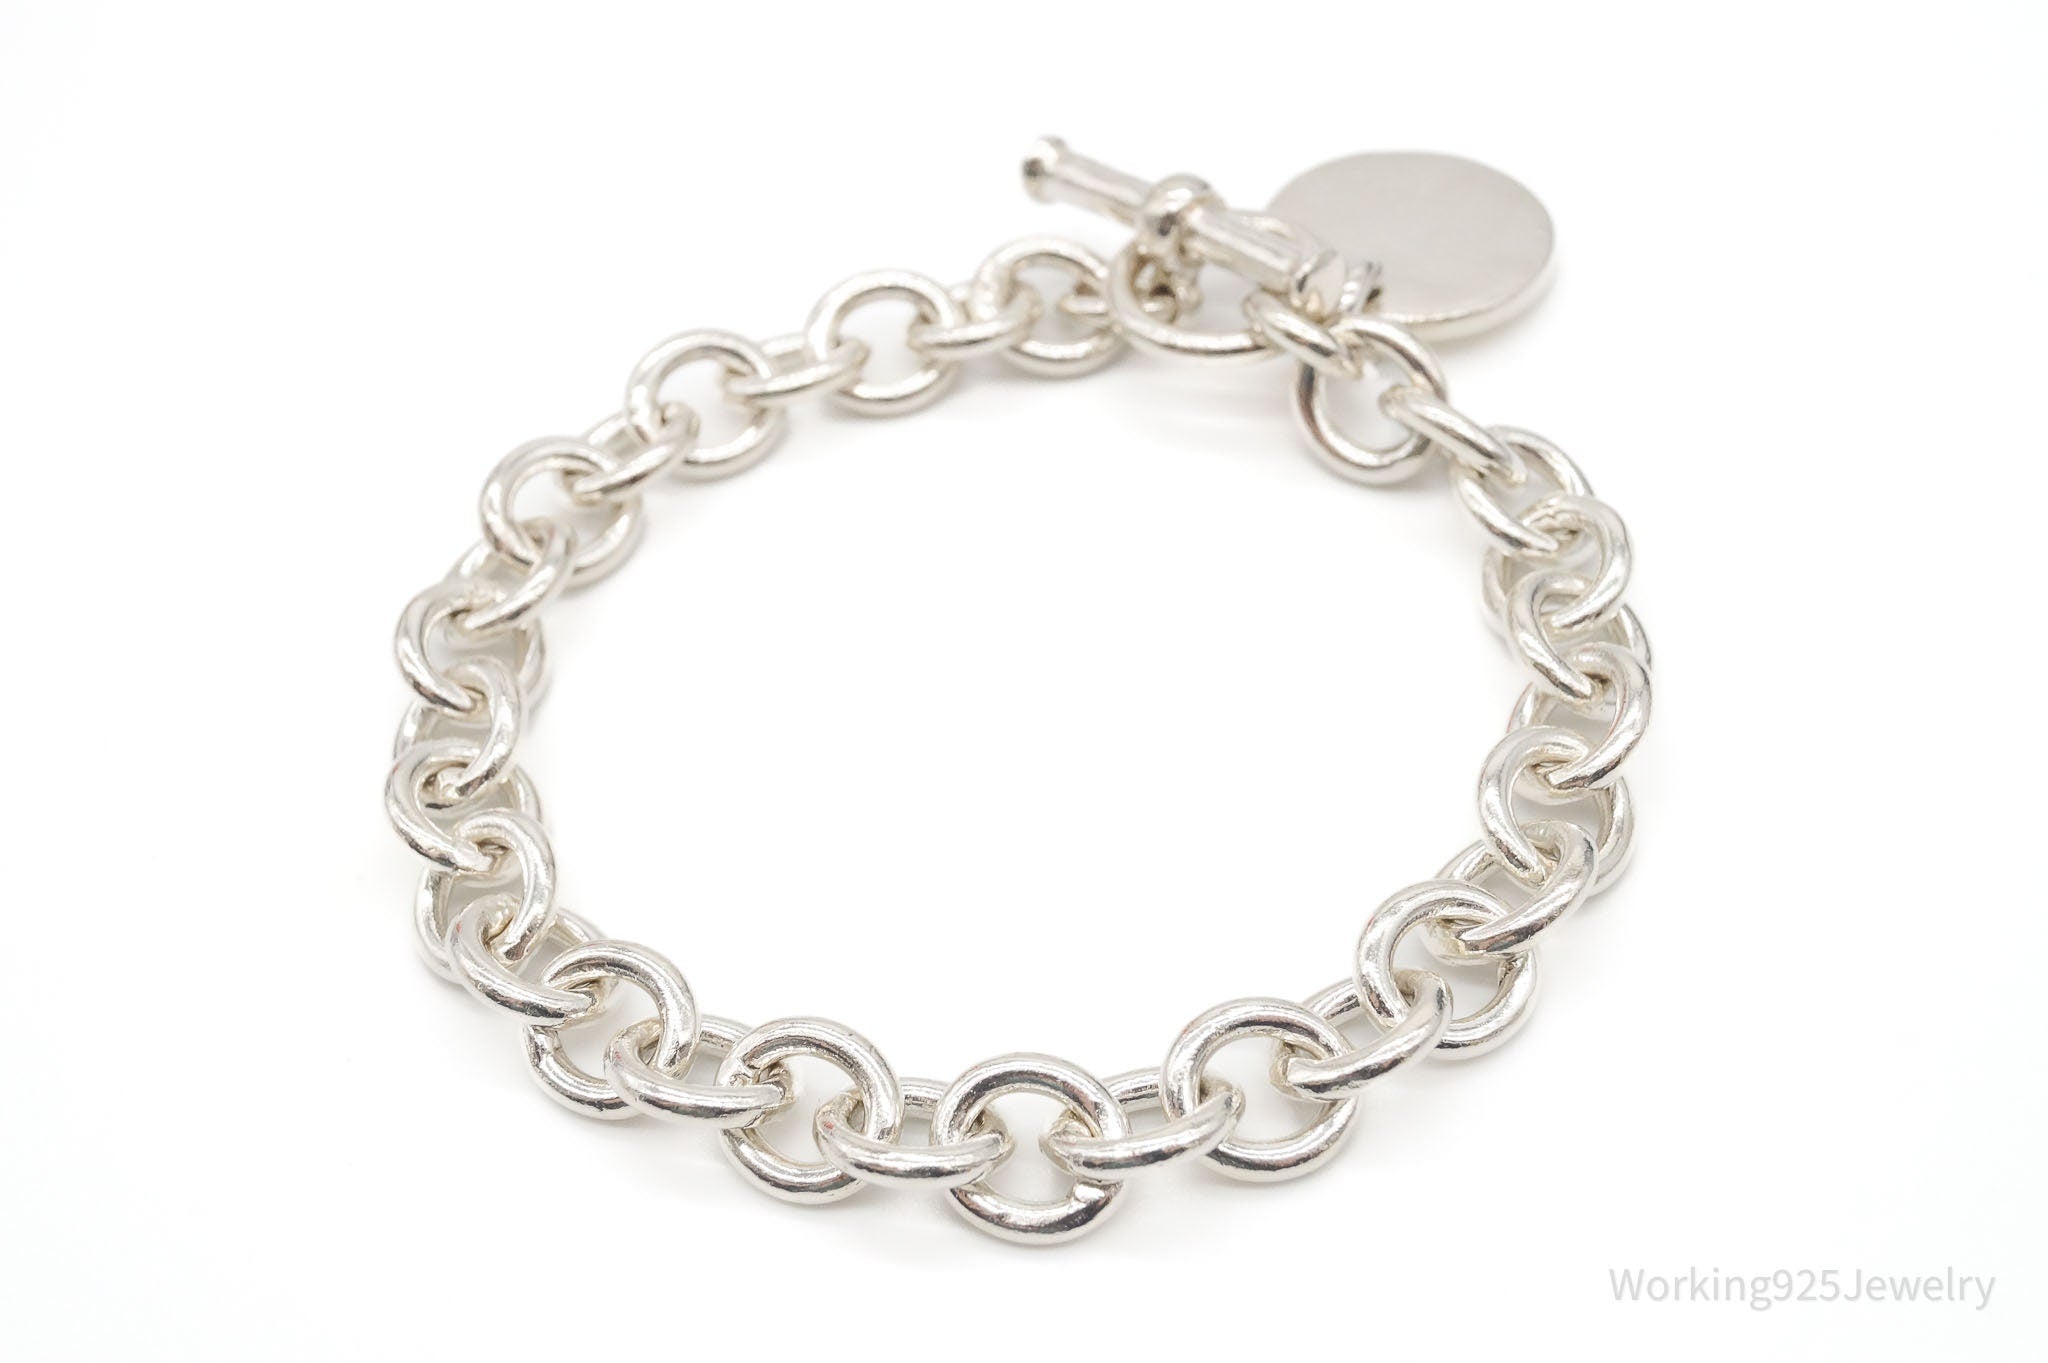 Vintage Circle Charm Sterling Silver Link Toggle Bracelet